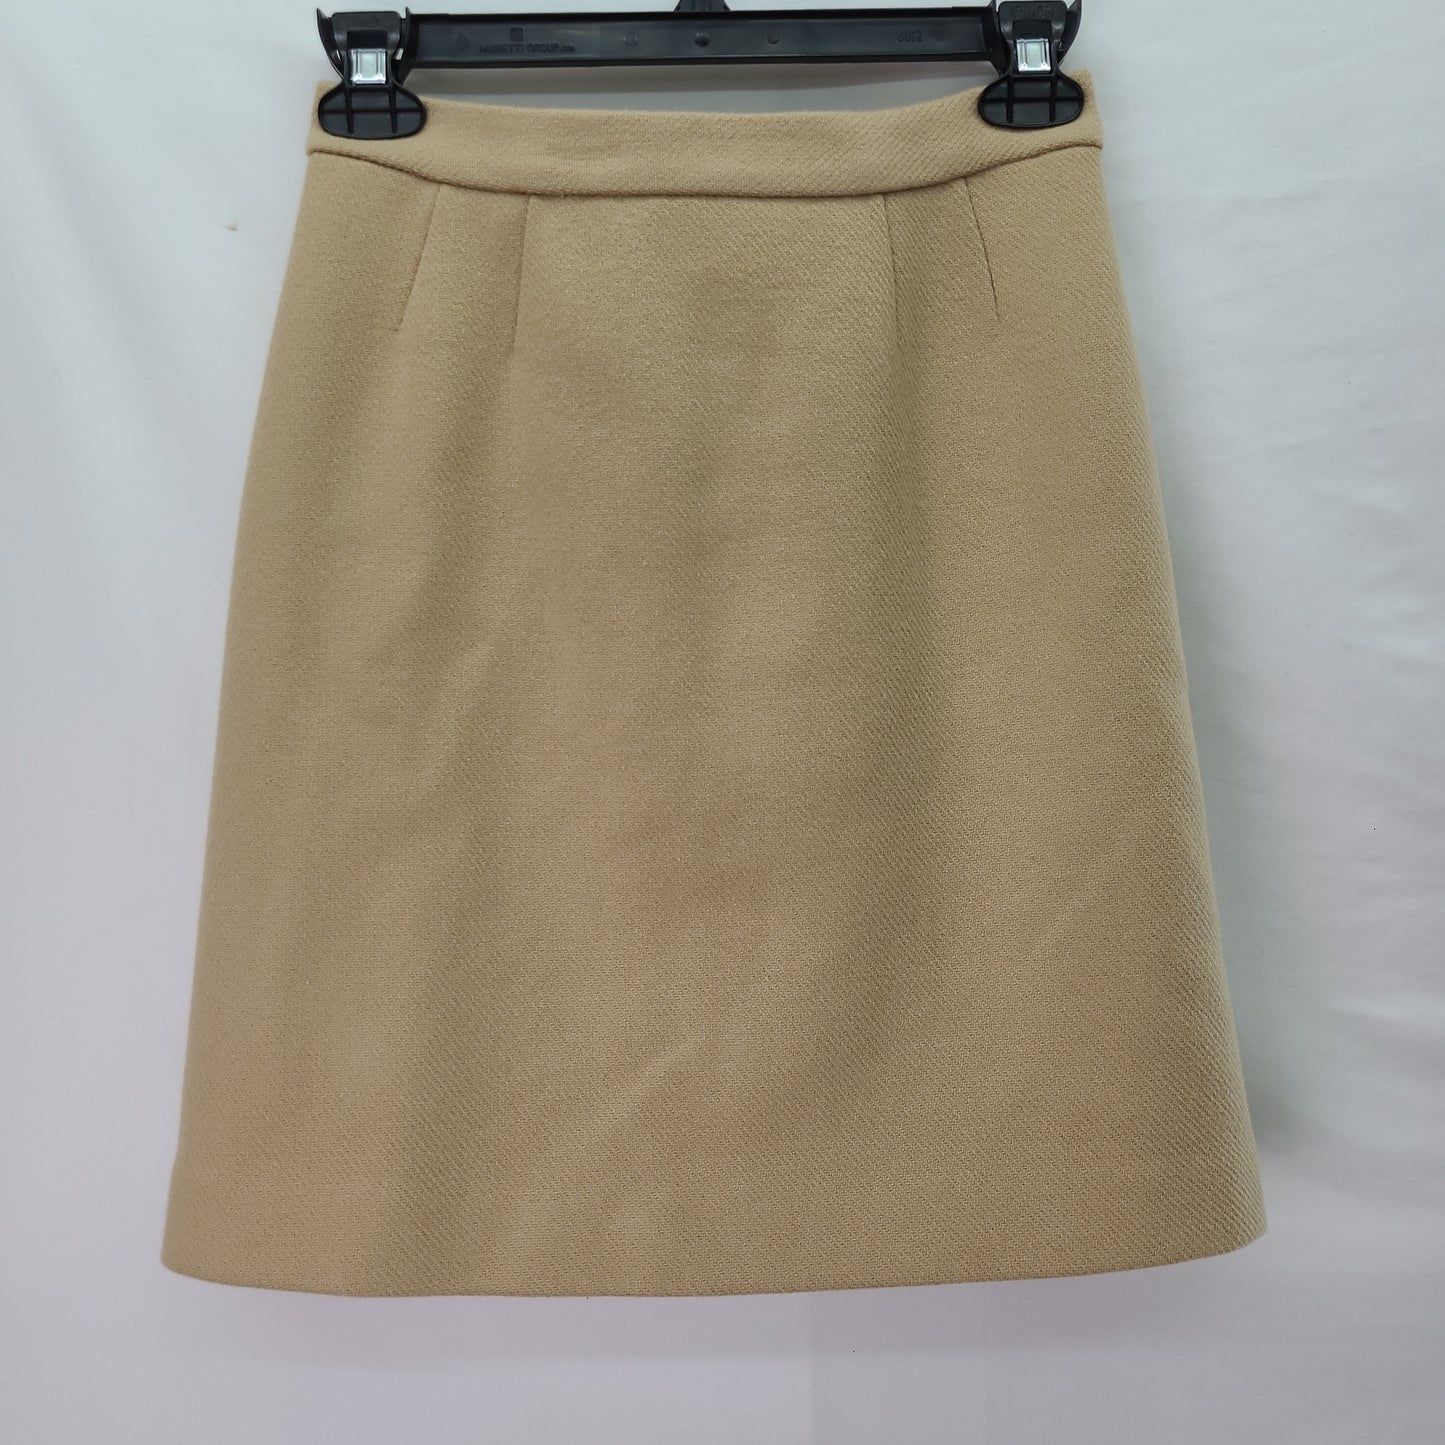 Diane von Furstenberg Women's Skirt Tan - Size 0